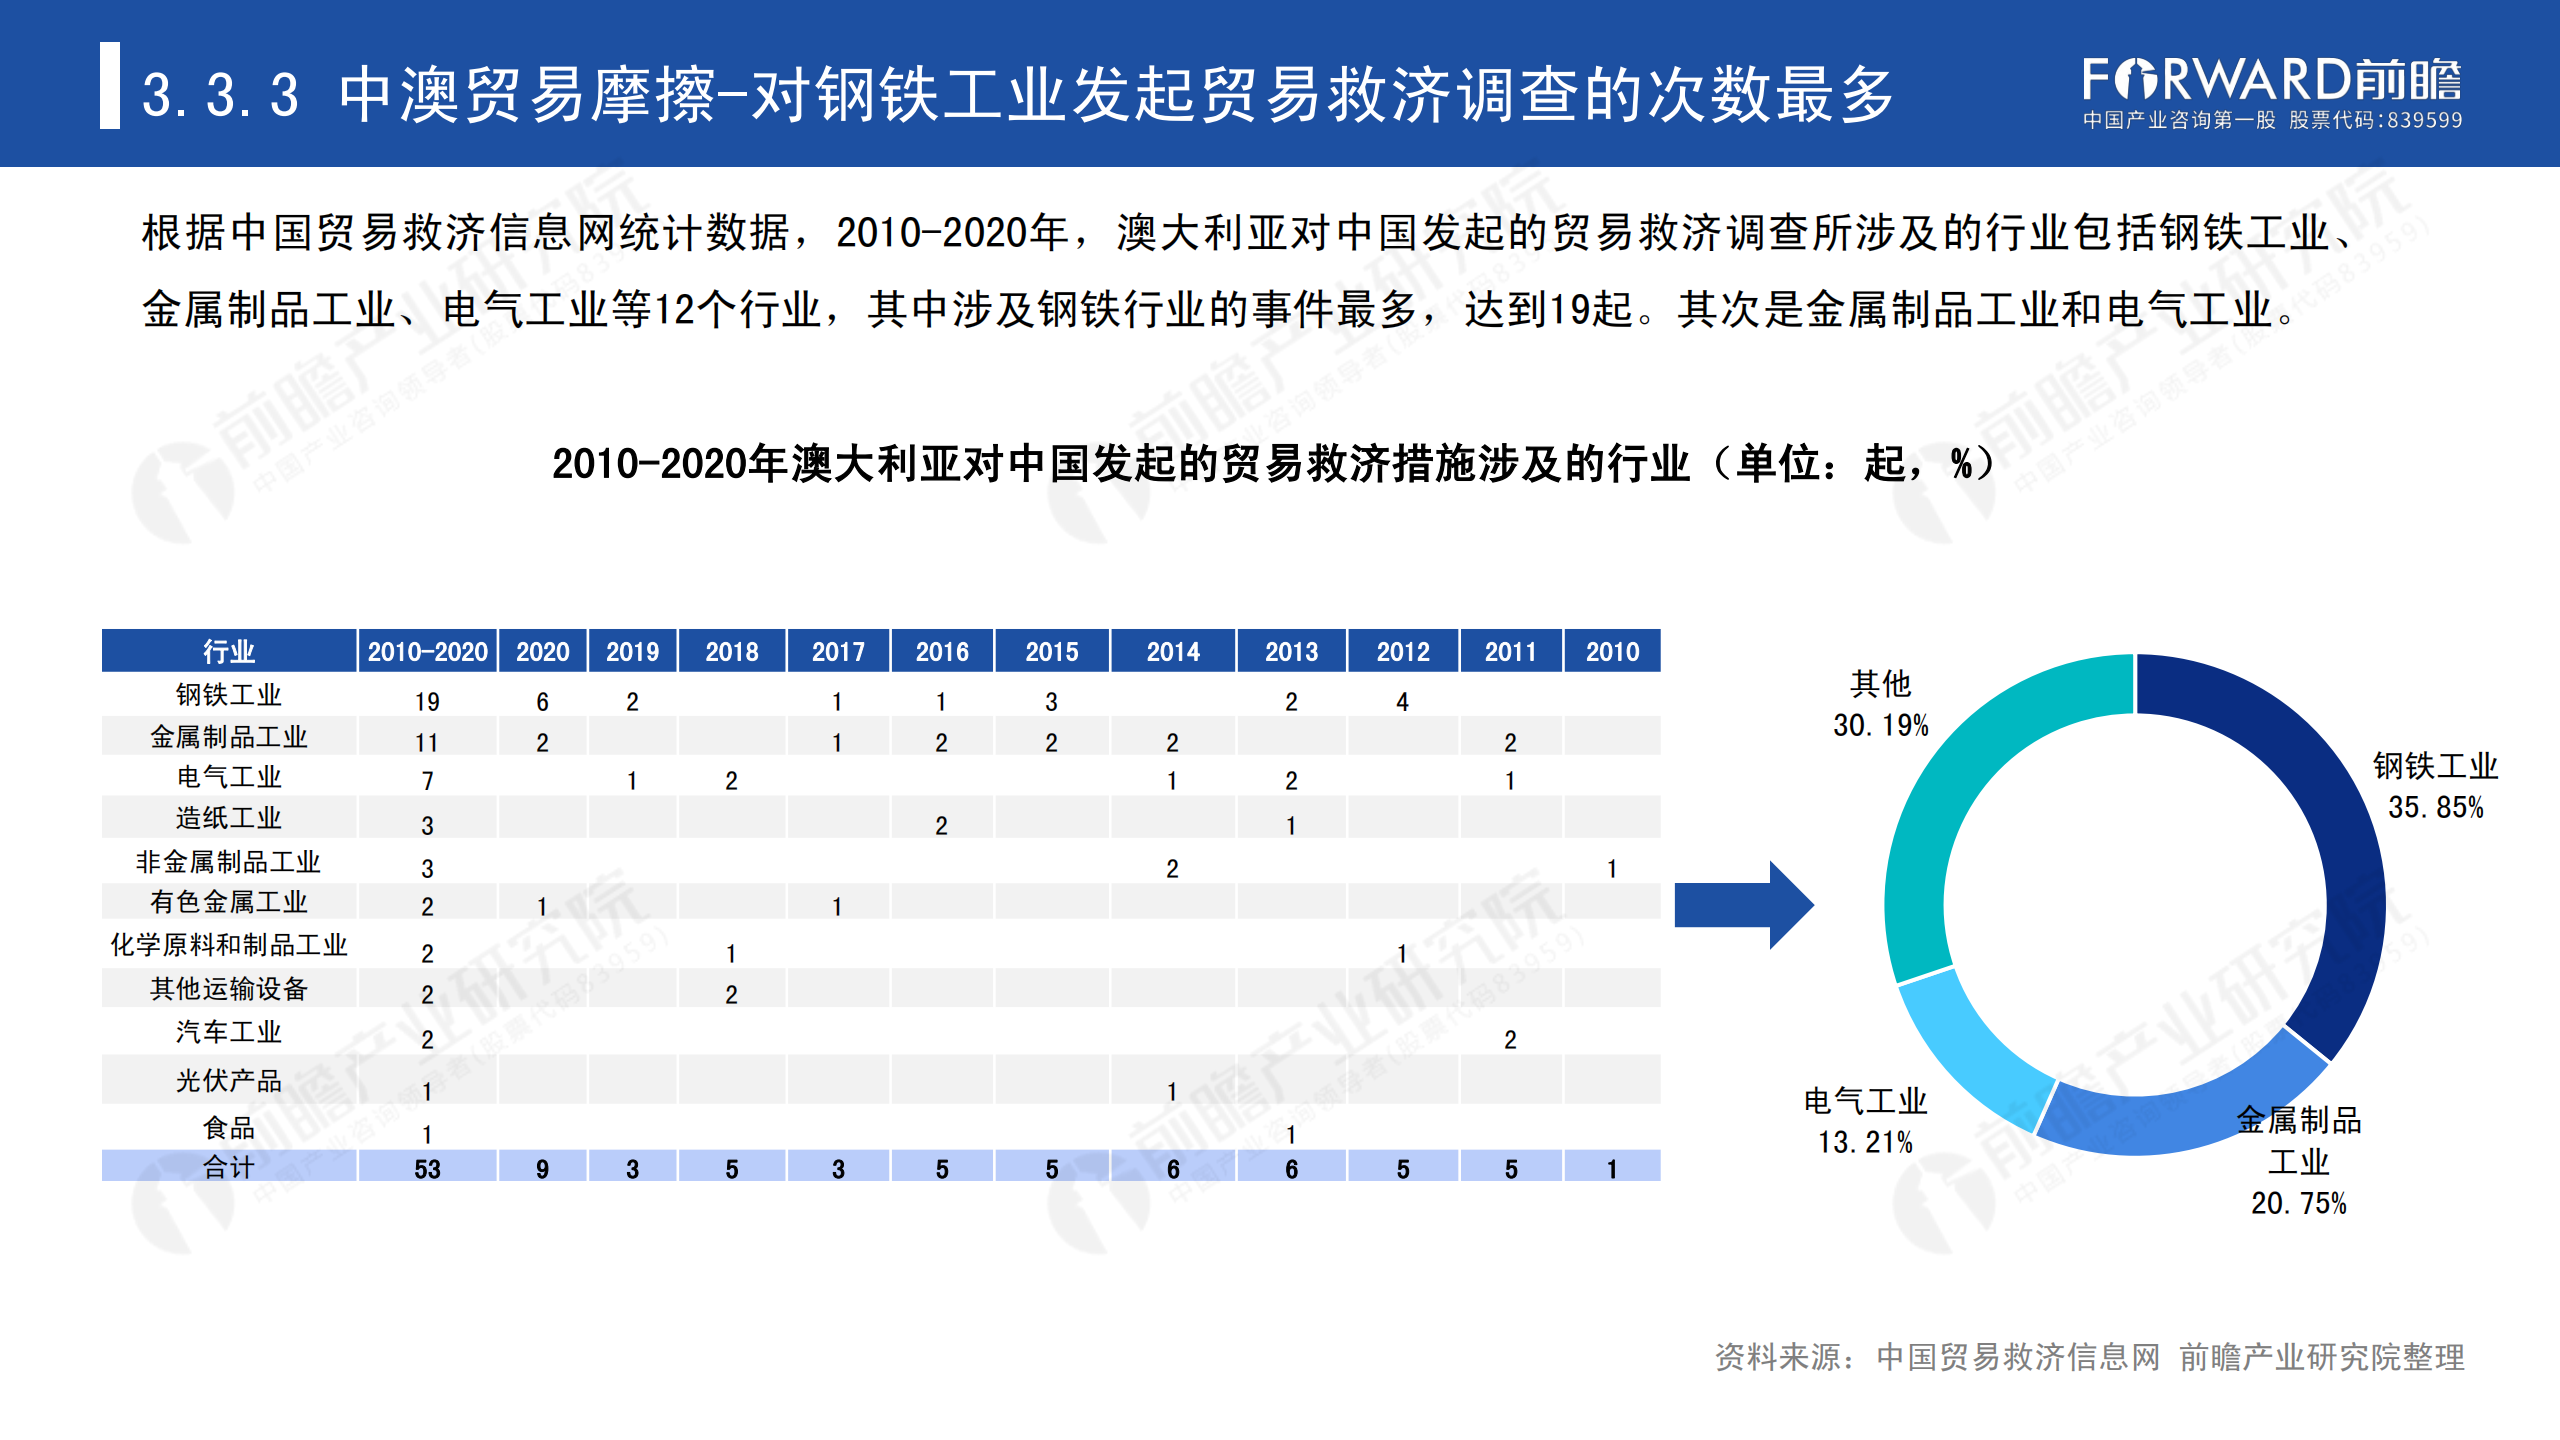 2020年中国贸易摩擦全景回顾-前瞻-2021-64页_47.png